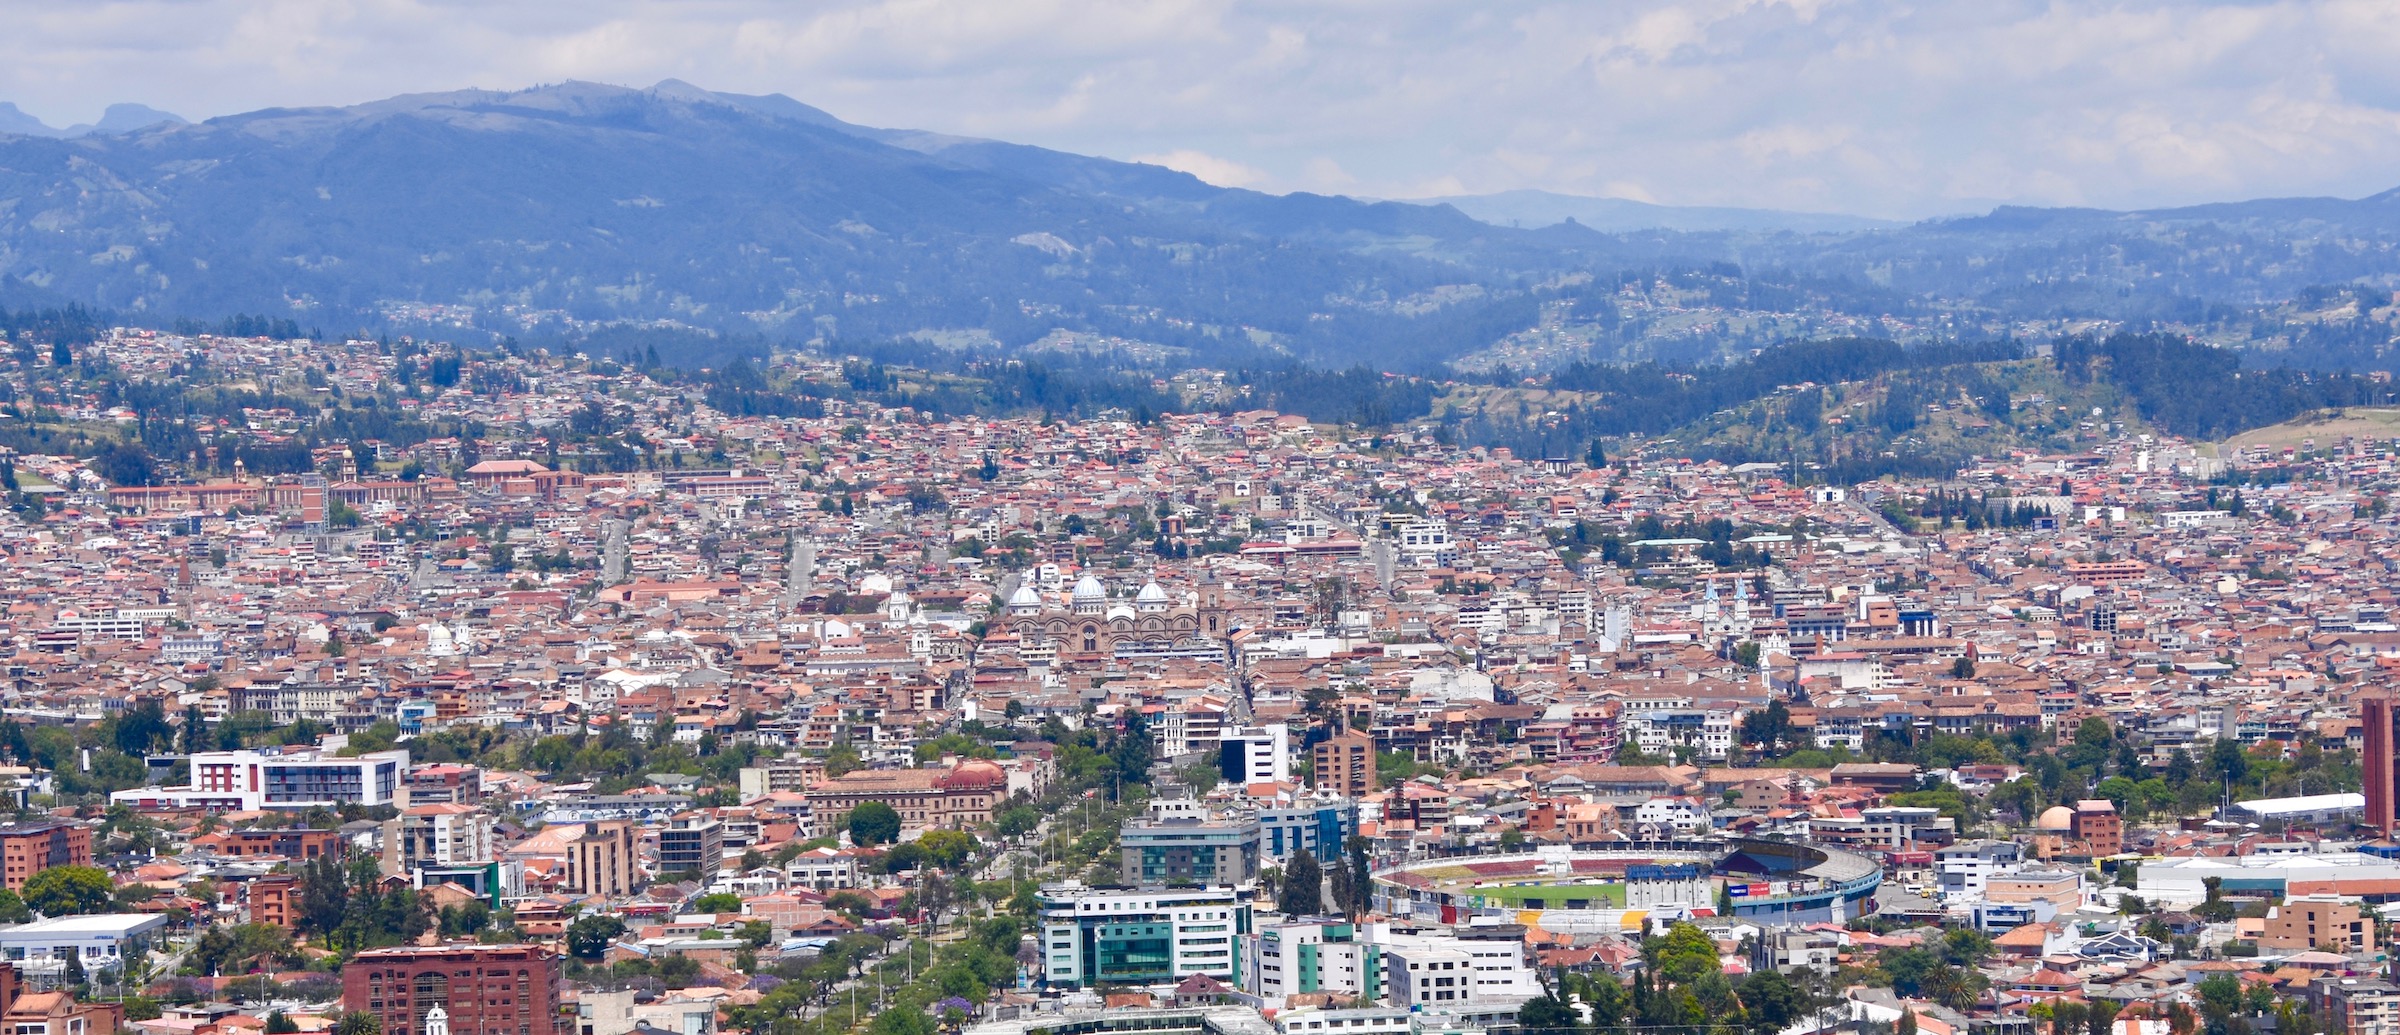 Mirador View of Cuenca